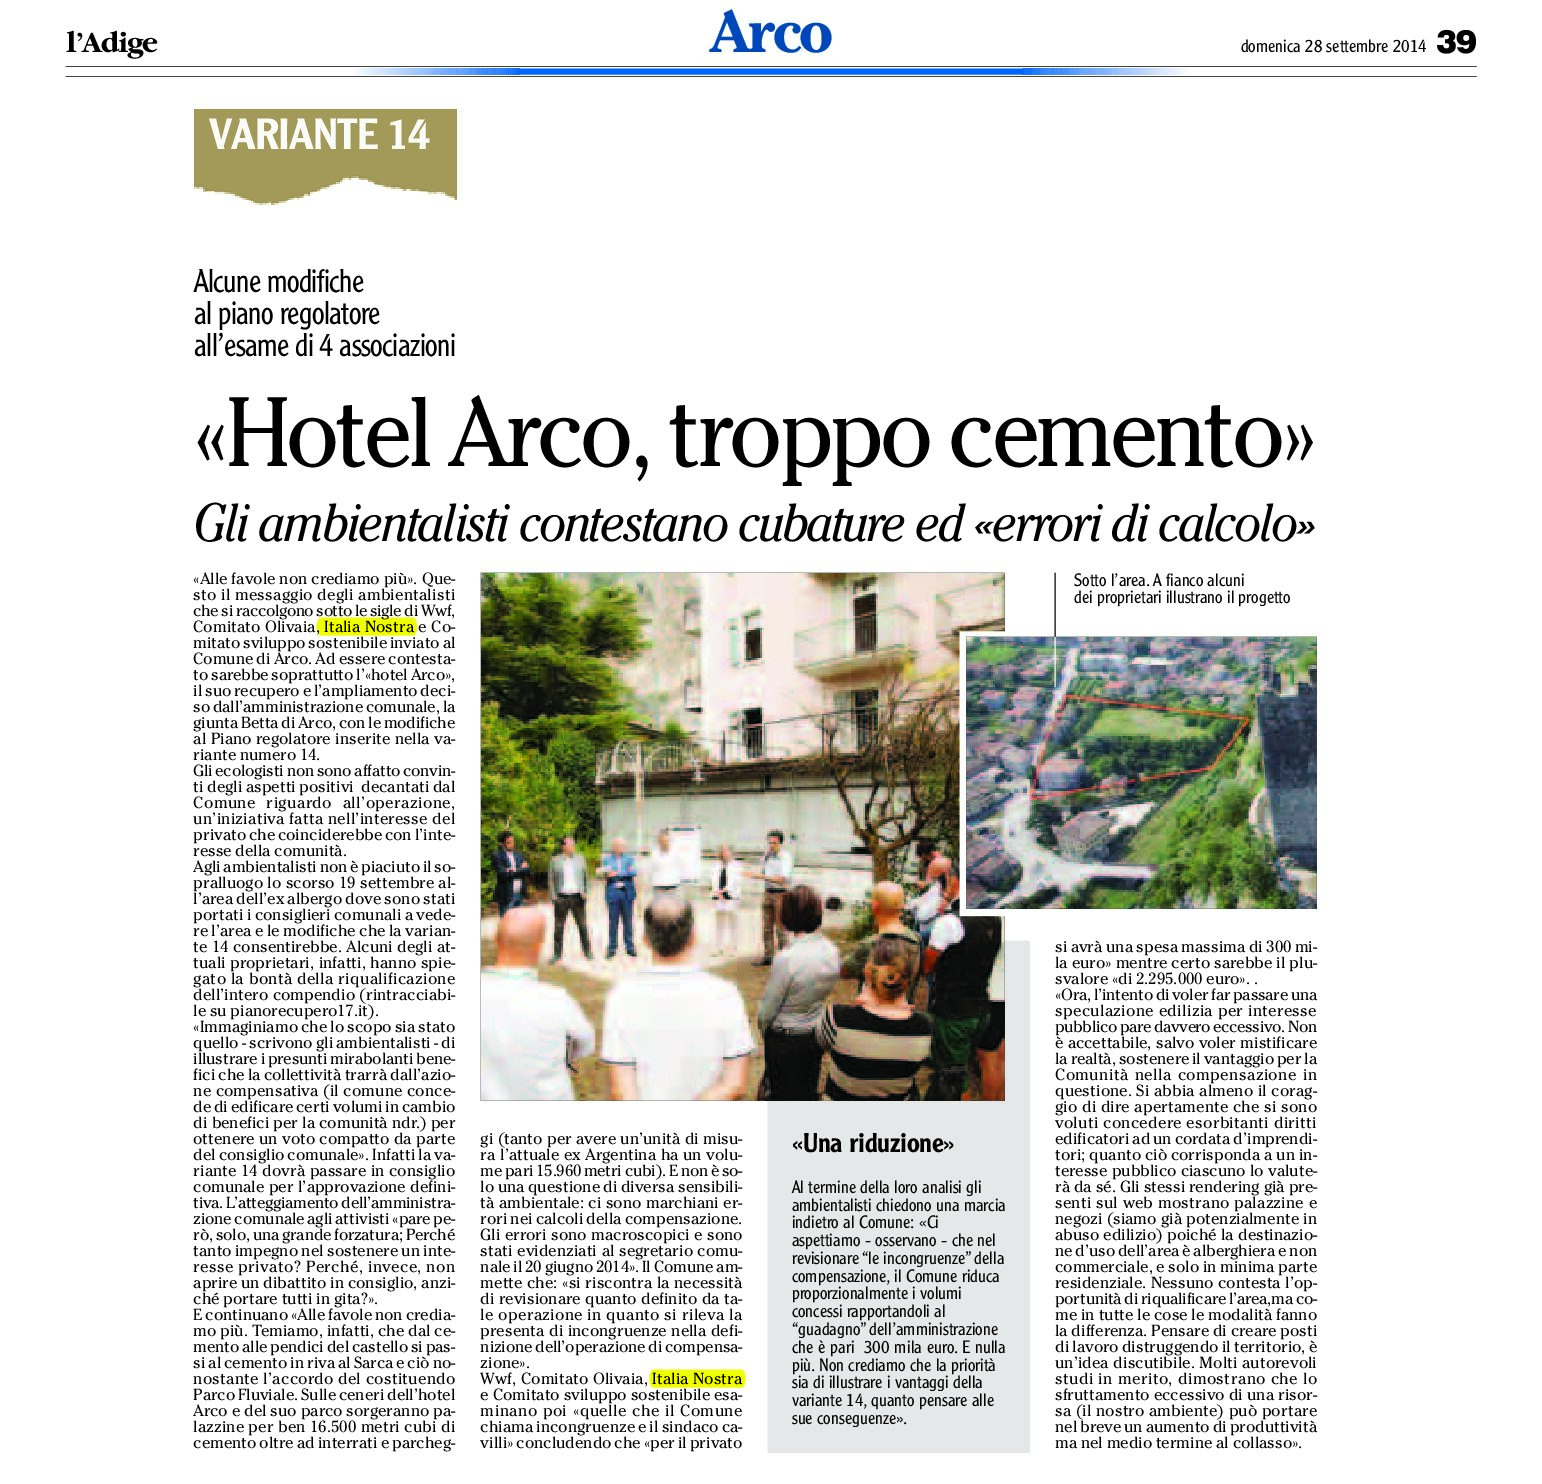 Hotel Arco: gli ambientalisti contestano cubature e “errori di calcolo”